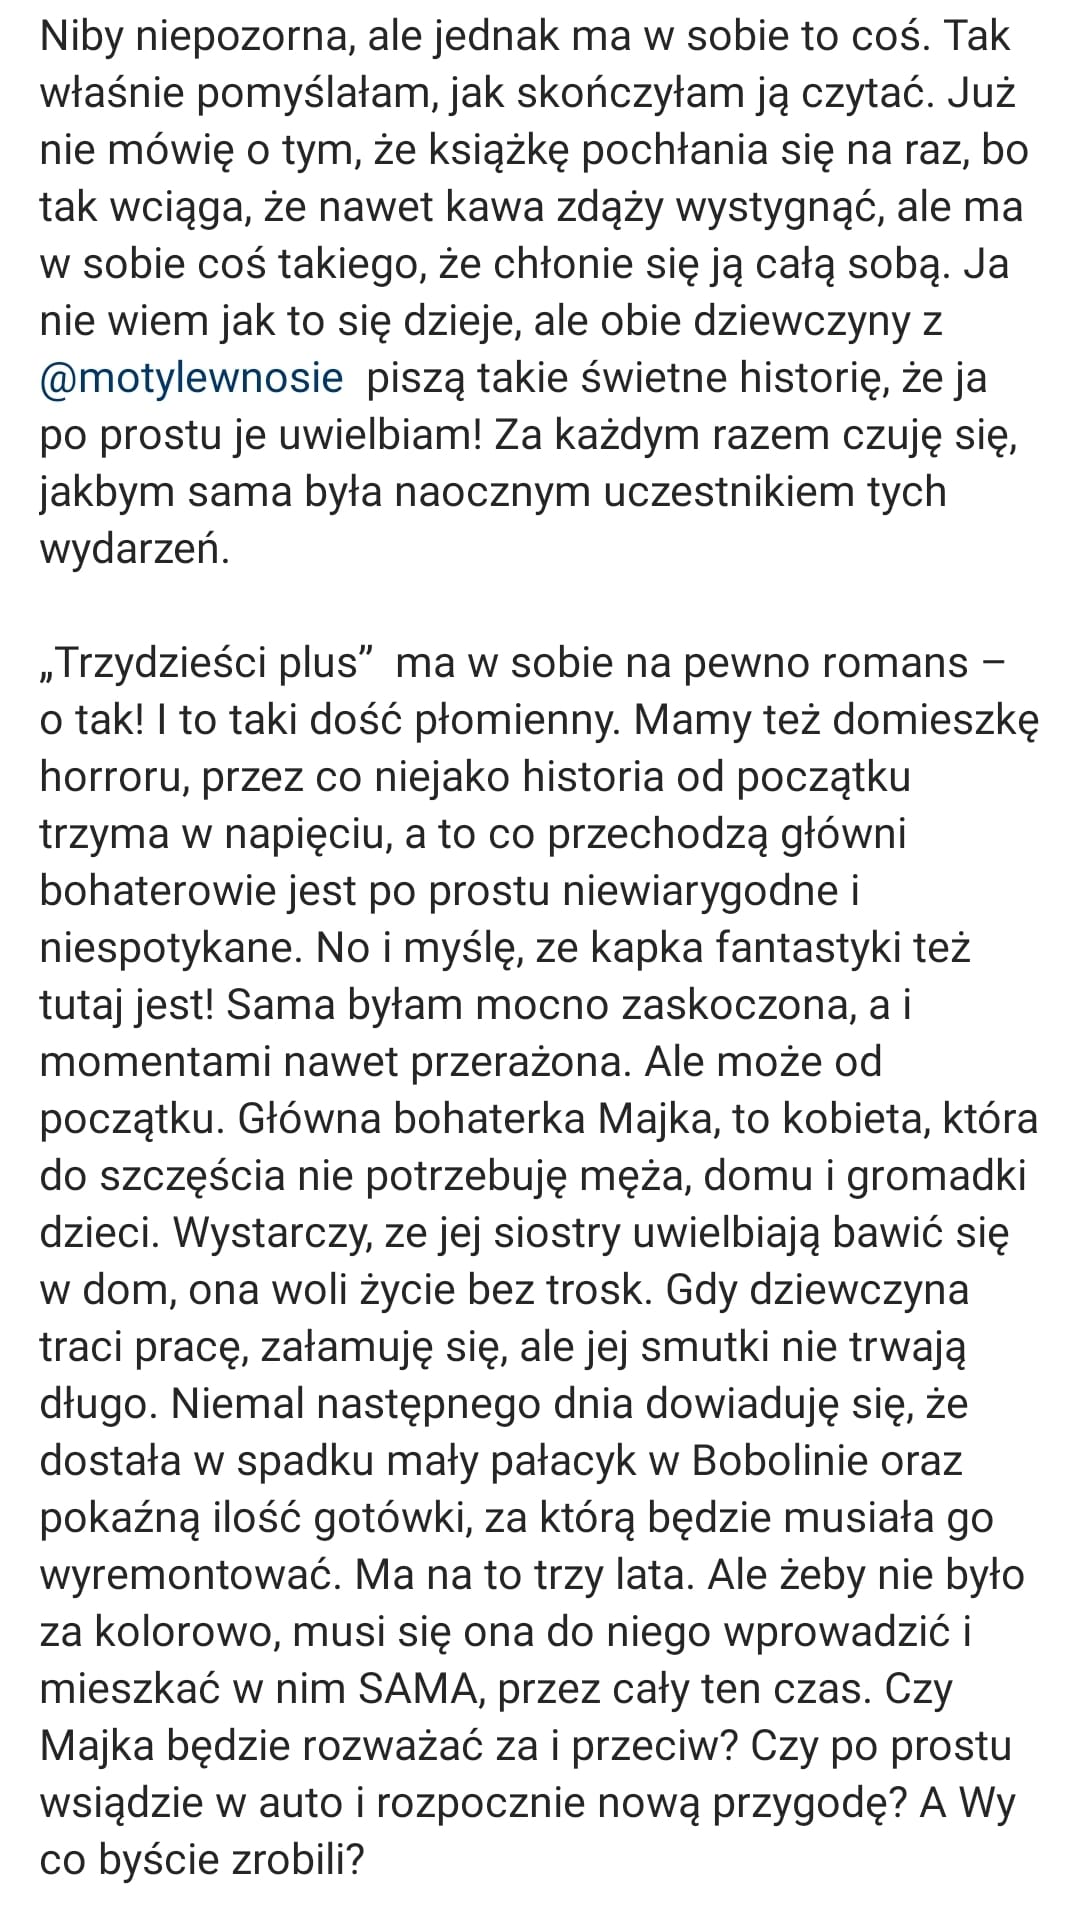 opinia o Trzydzieści plus od @Justus_reads